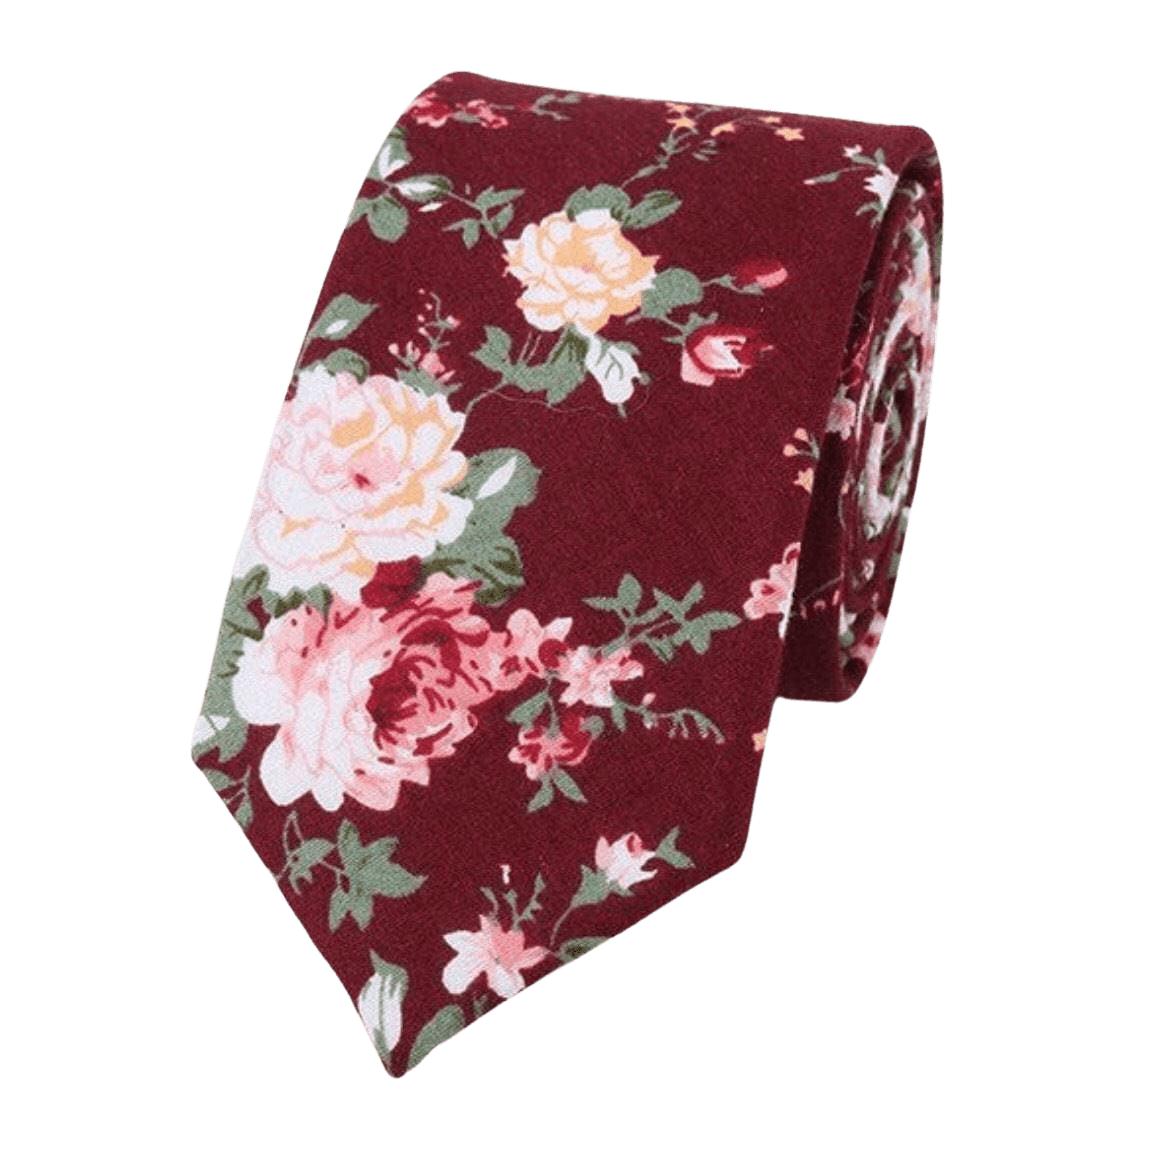 Burgundy Floral Tie for Weddings and Groom WESLEY MYTIESHOP